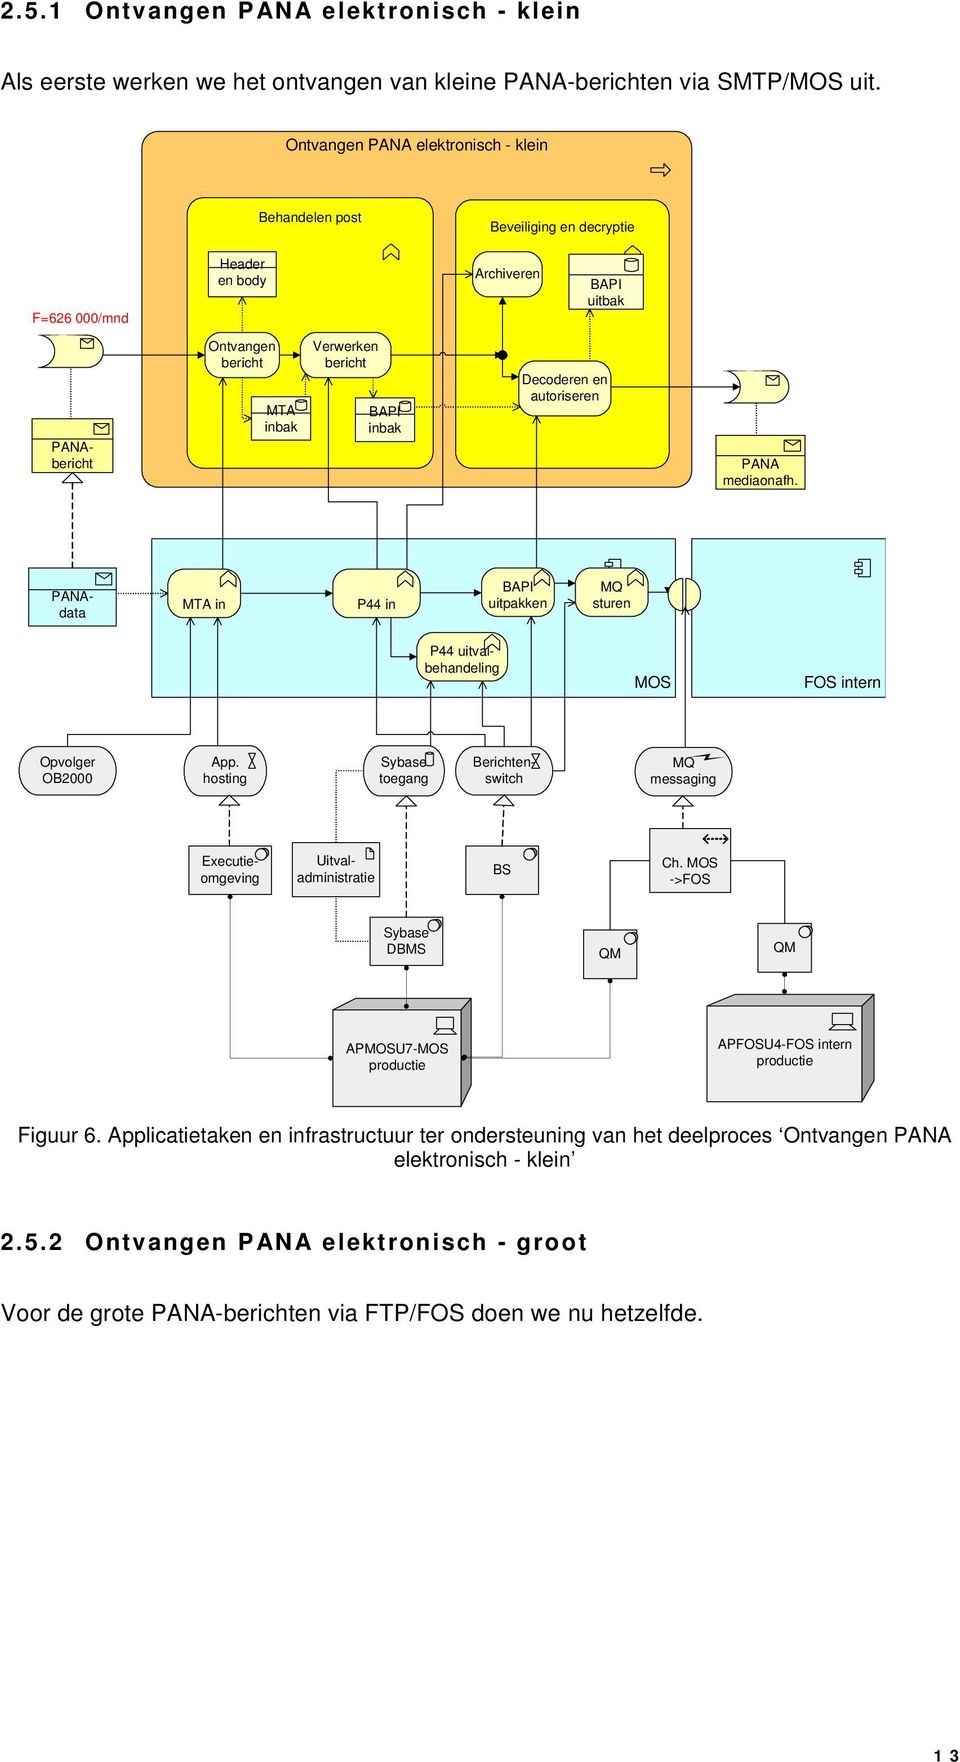 mediaonafh. data MTA in P44 in BAPI uitpakken sturen P44 uitvalbehandeling MOS FOS intern Opvolger OB2000 App.